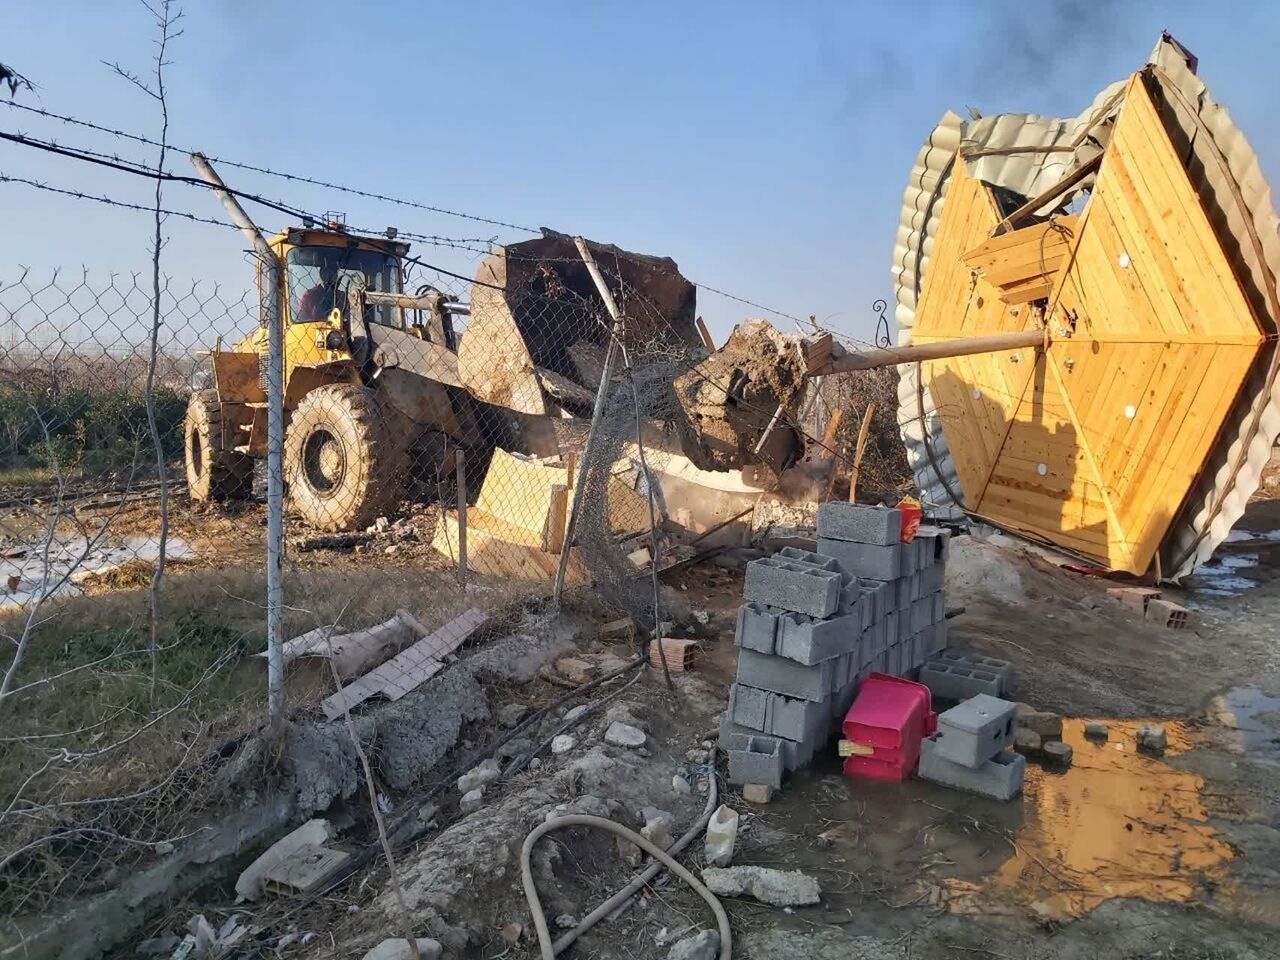 سه ساخت و ساز غیرمجاز در شهرستان بهار تخریب شد